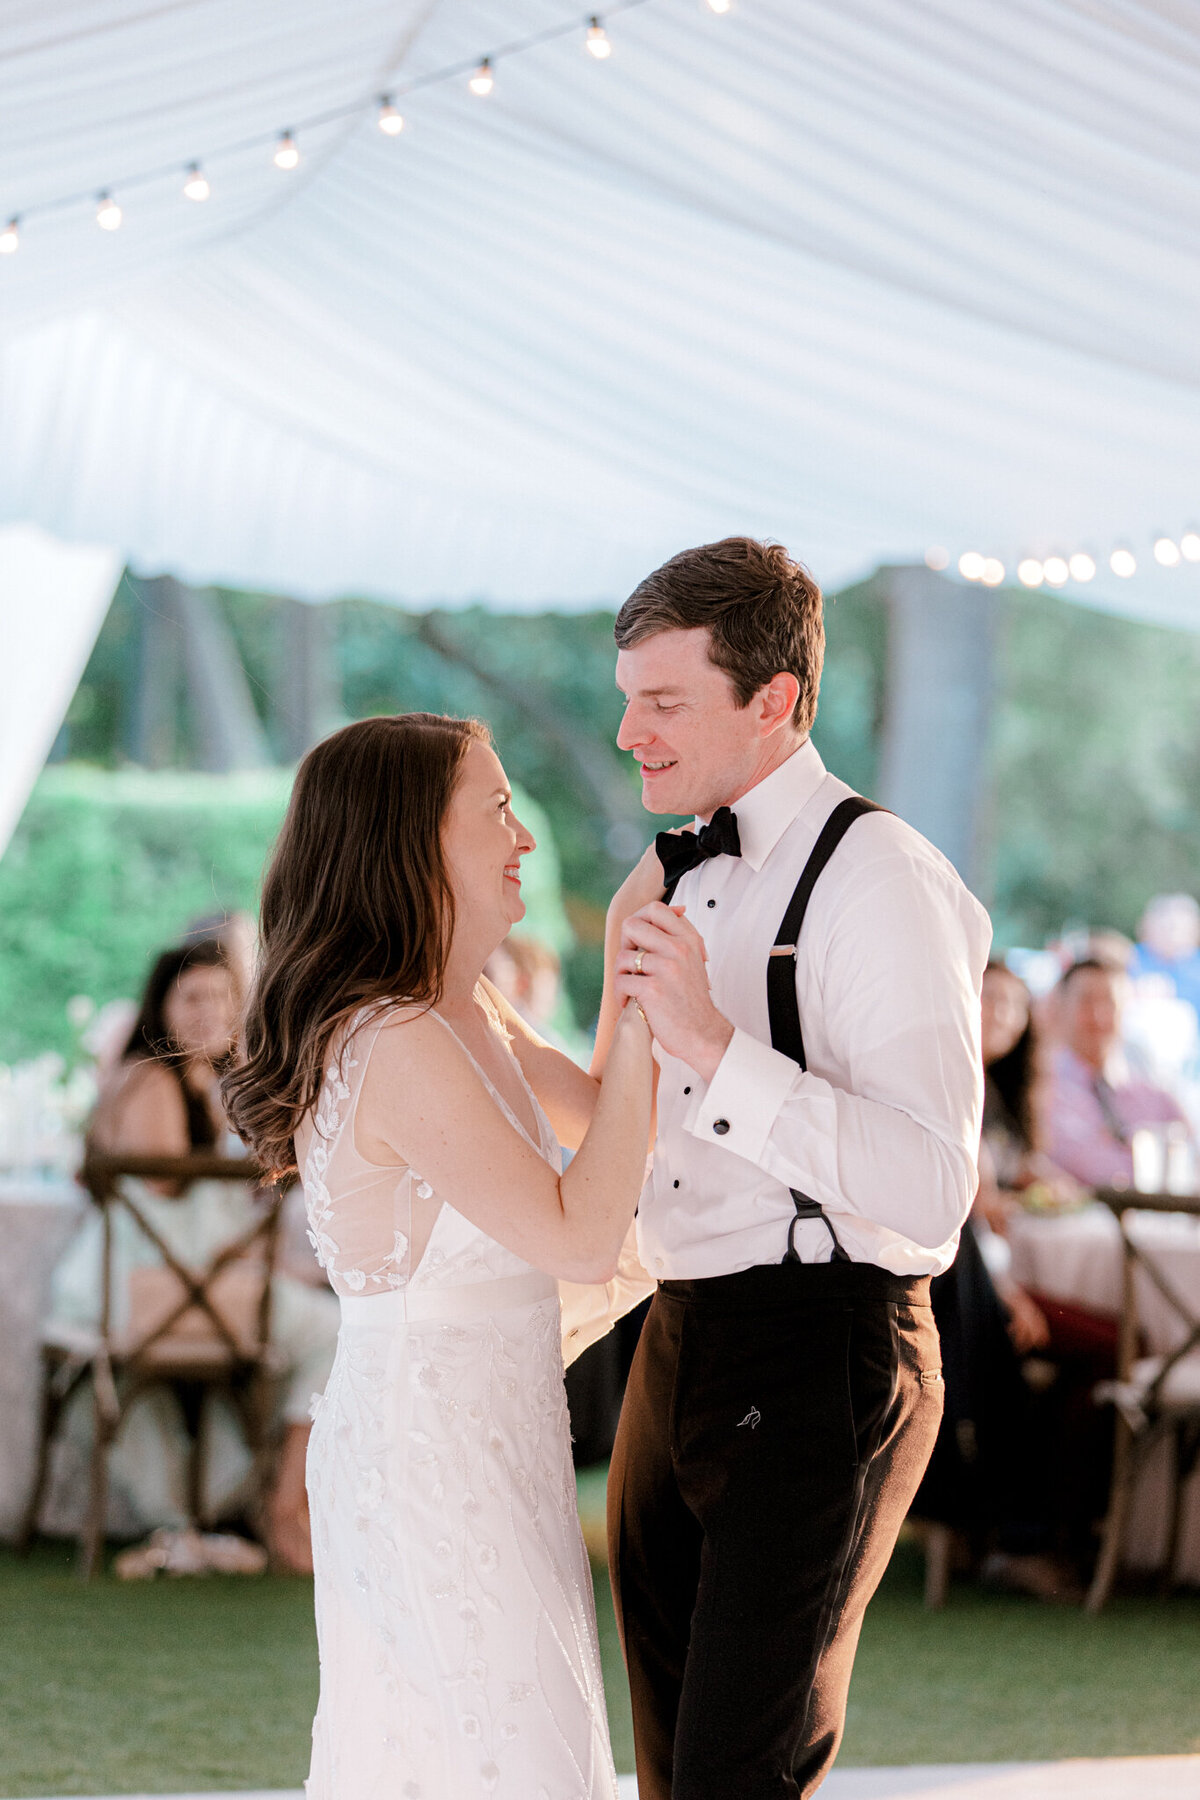 Gena & Matt's Wedding at the Dallas Arboretum | Dallas Wedding Photographer | Sami Kathryn Photography-235